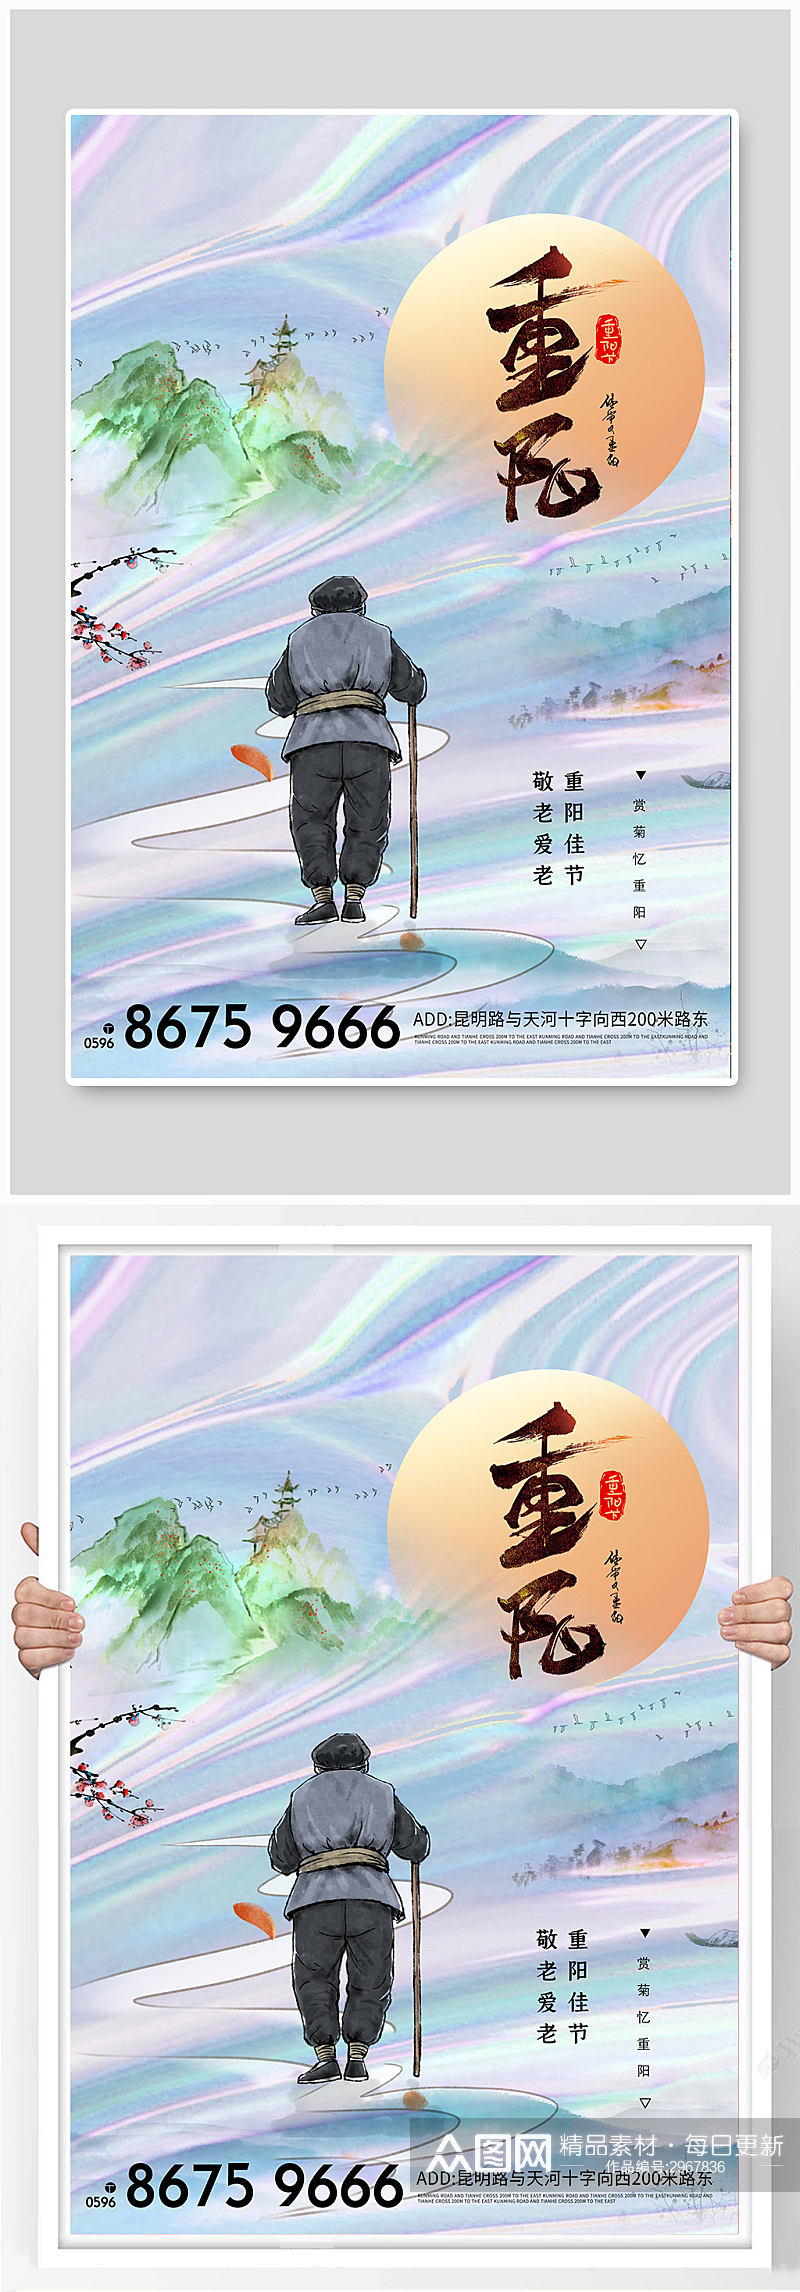 山水画传统节日重阳节海报素材